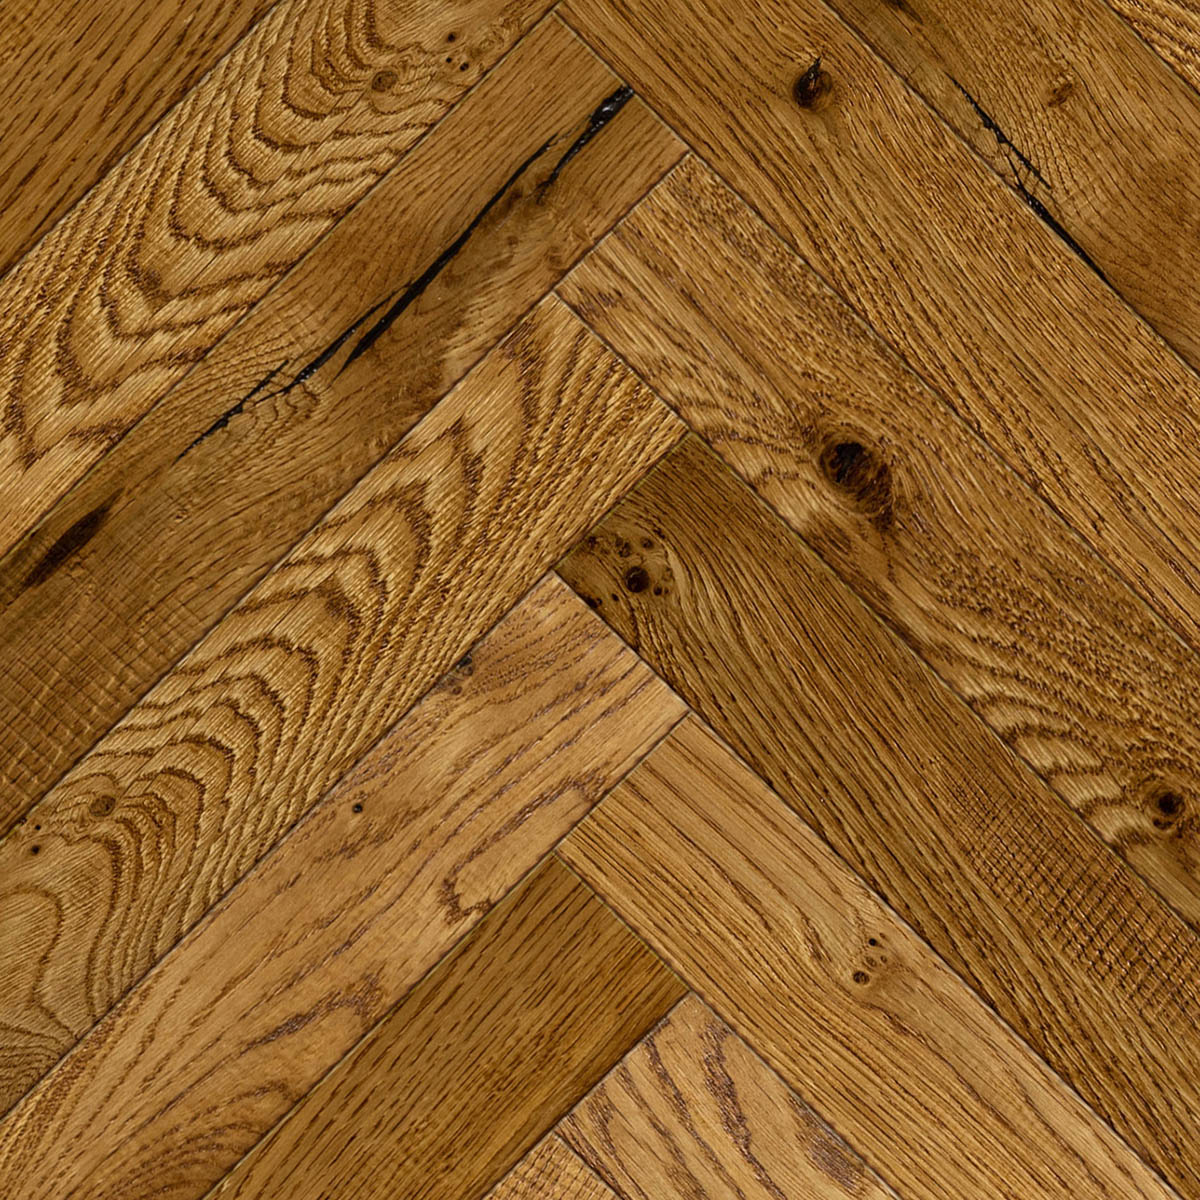 Midhope Herringbone - Distressed Rustic-Grade Oak Floor